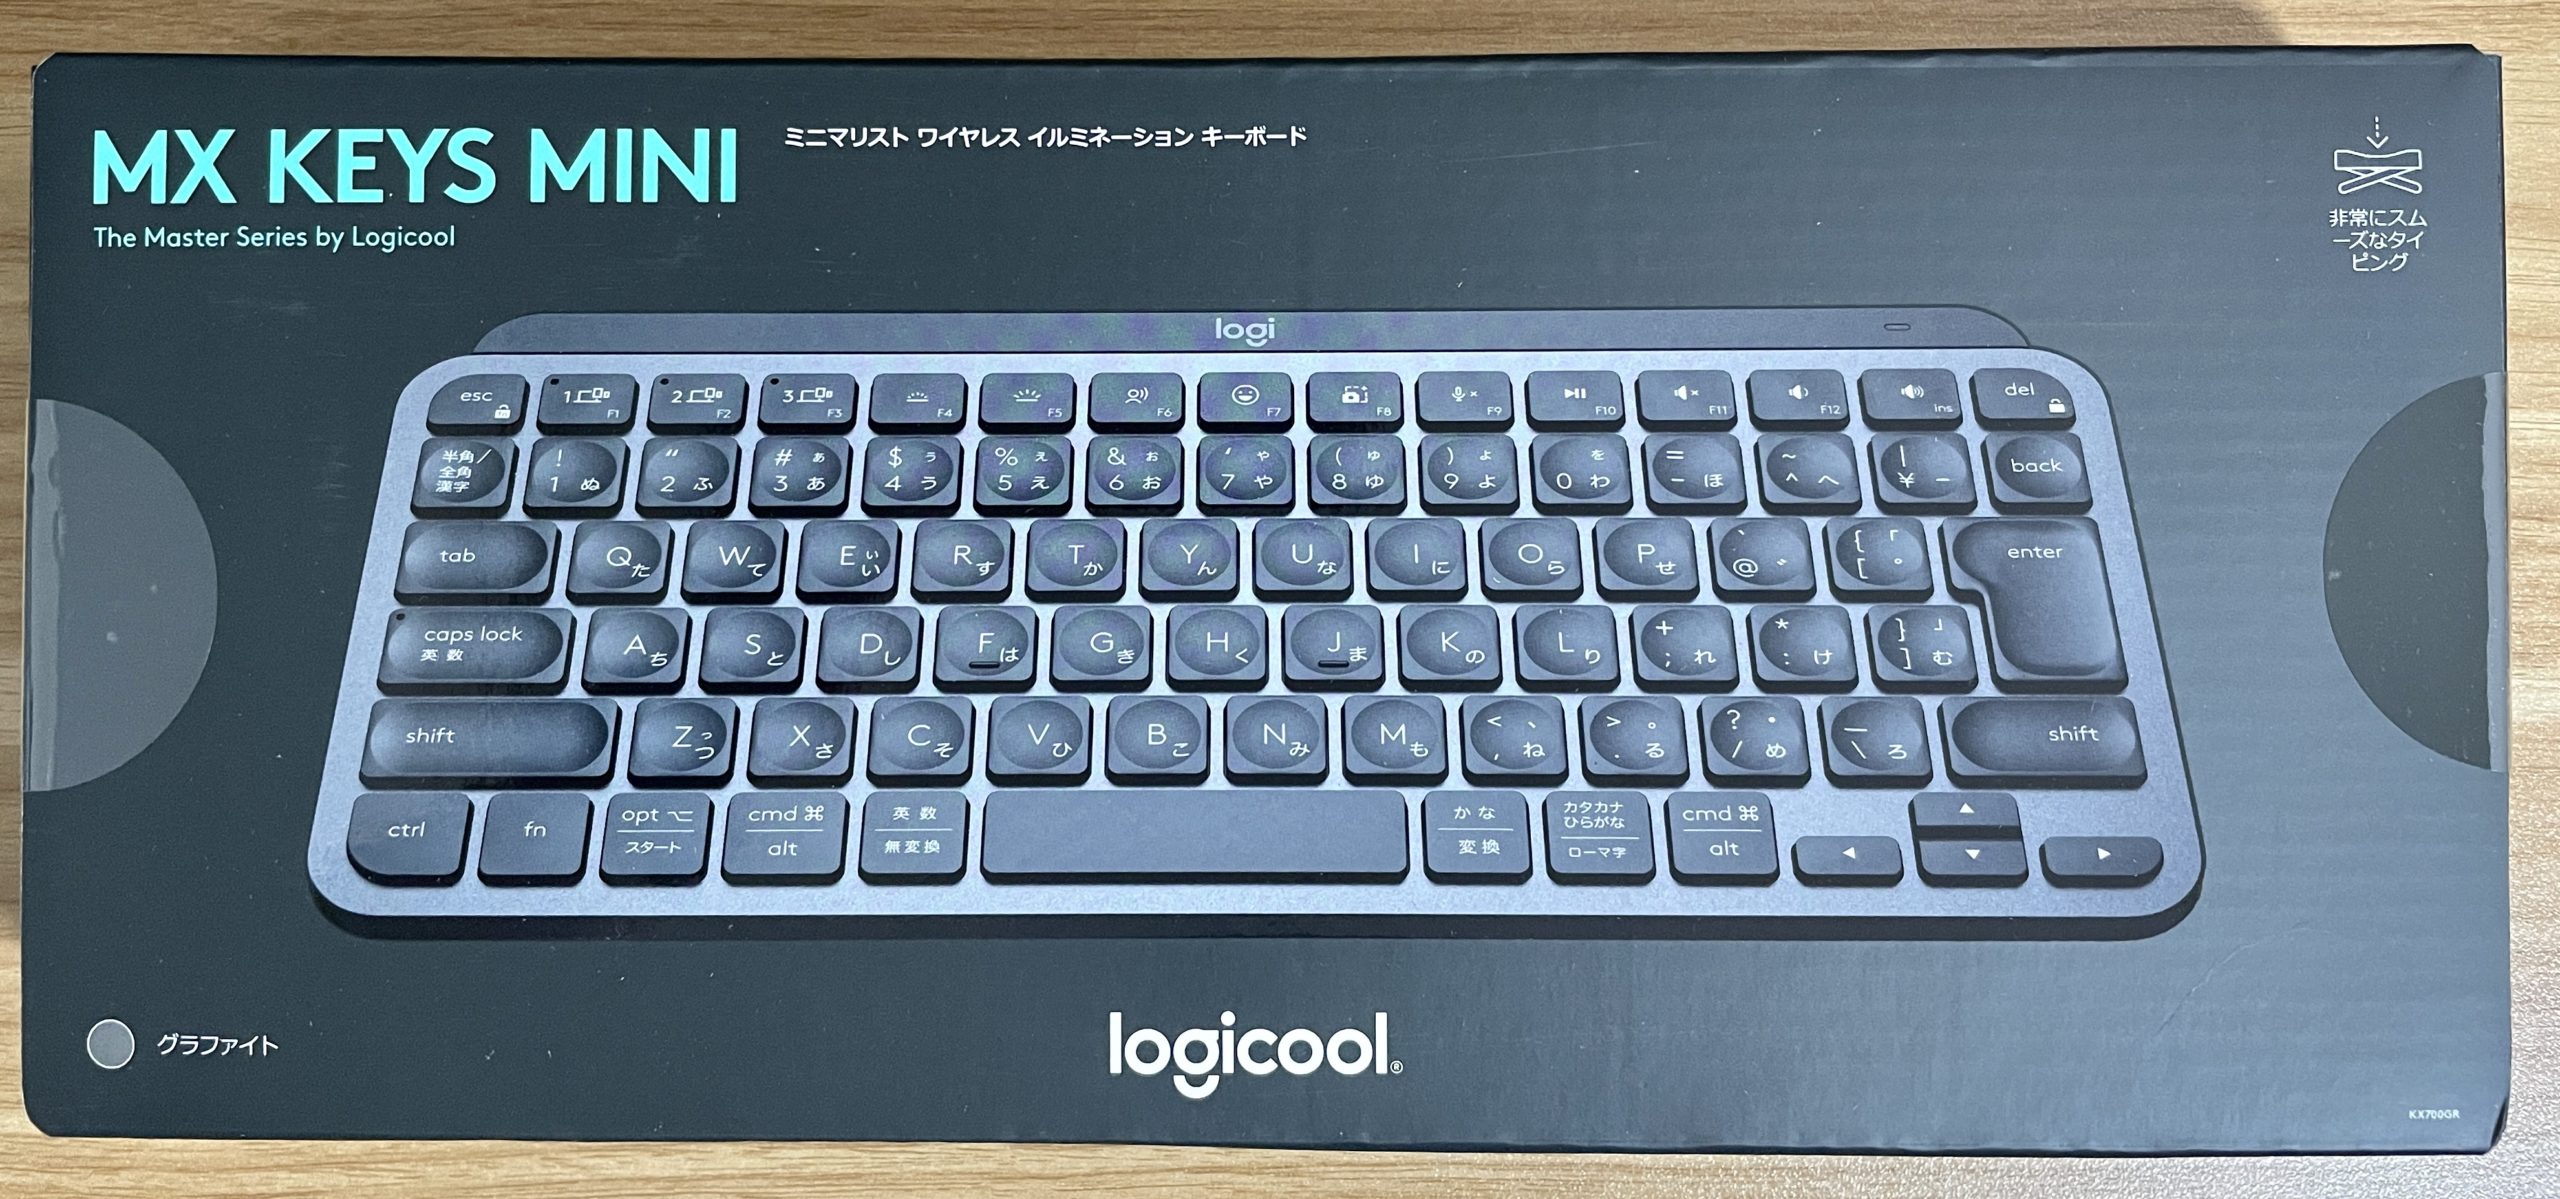 薄い・軽い・打ちやすい「logicool MX Keys mini」を購入&開封 | 雑ノート